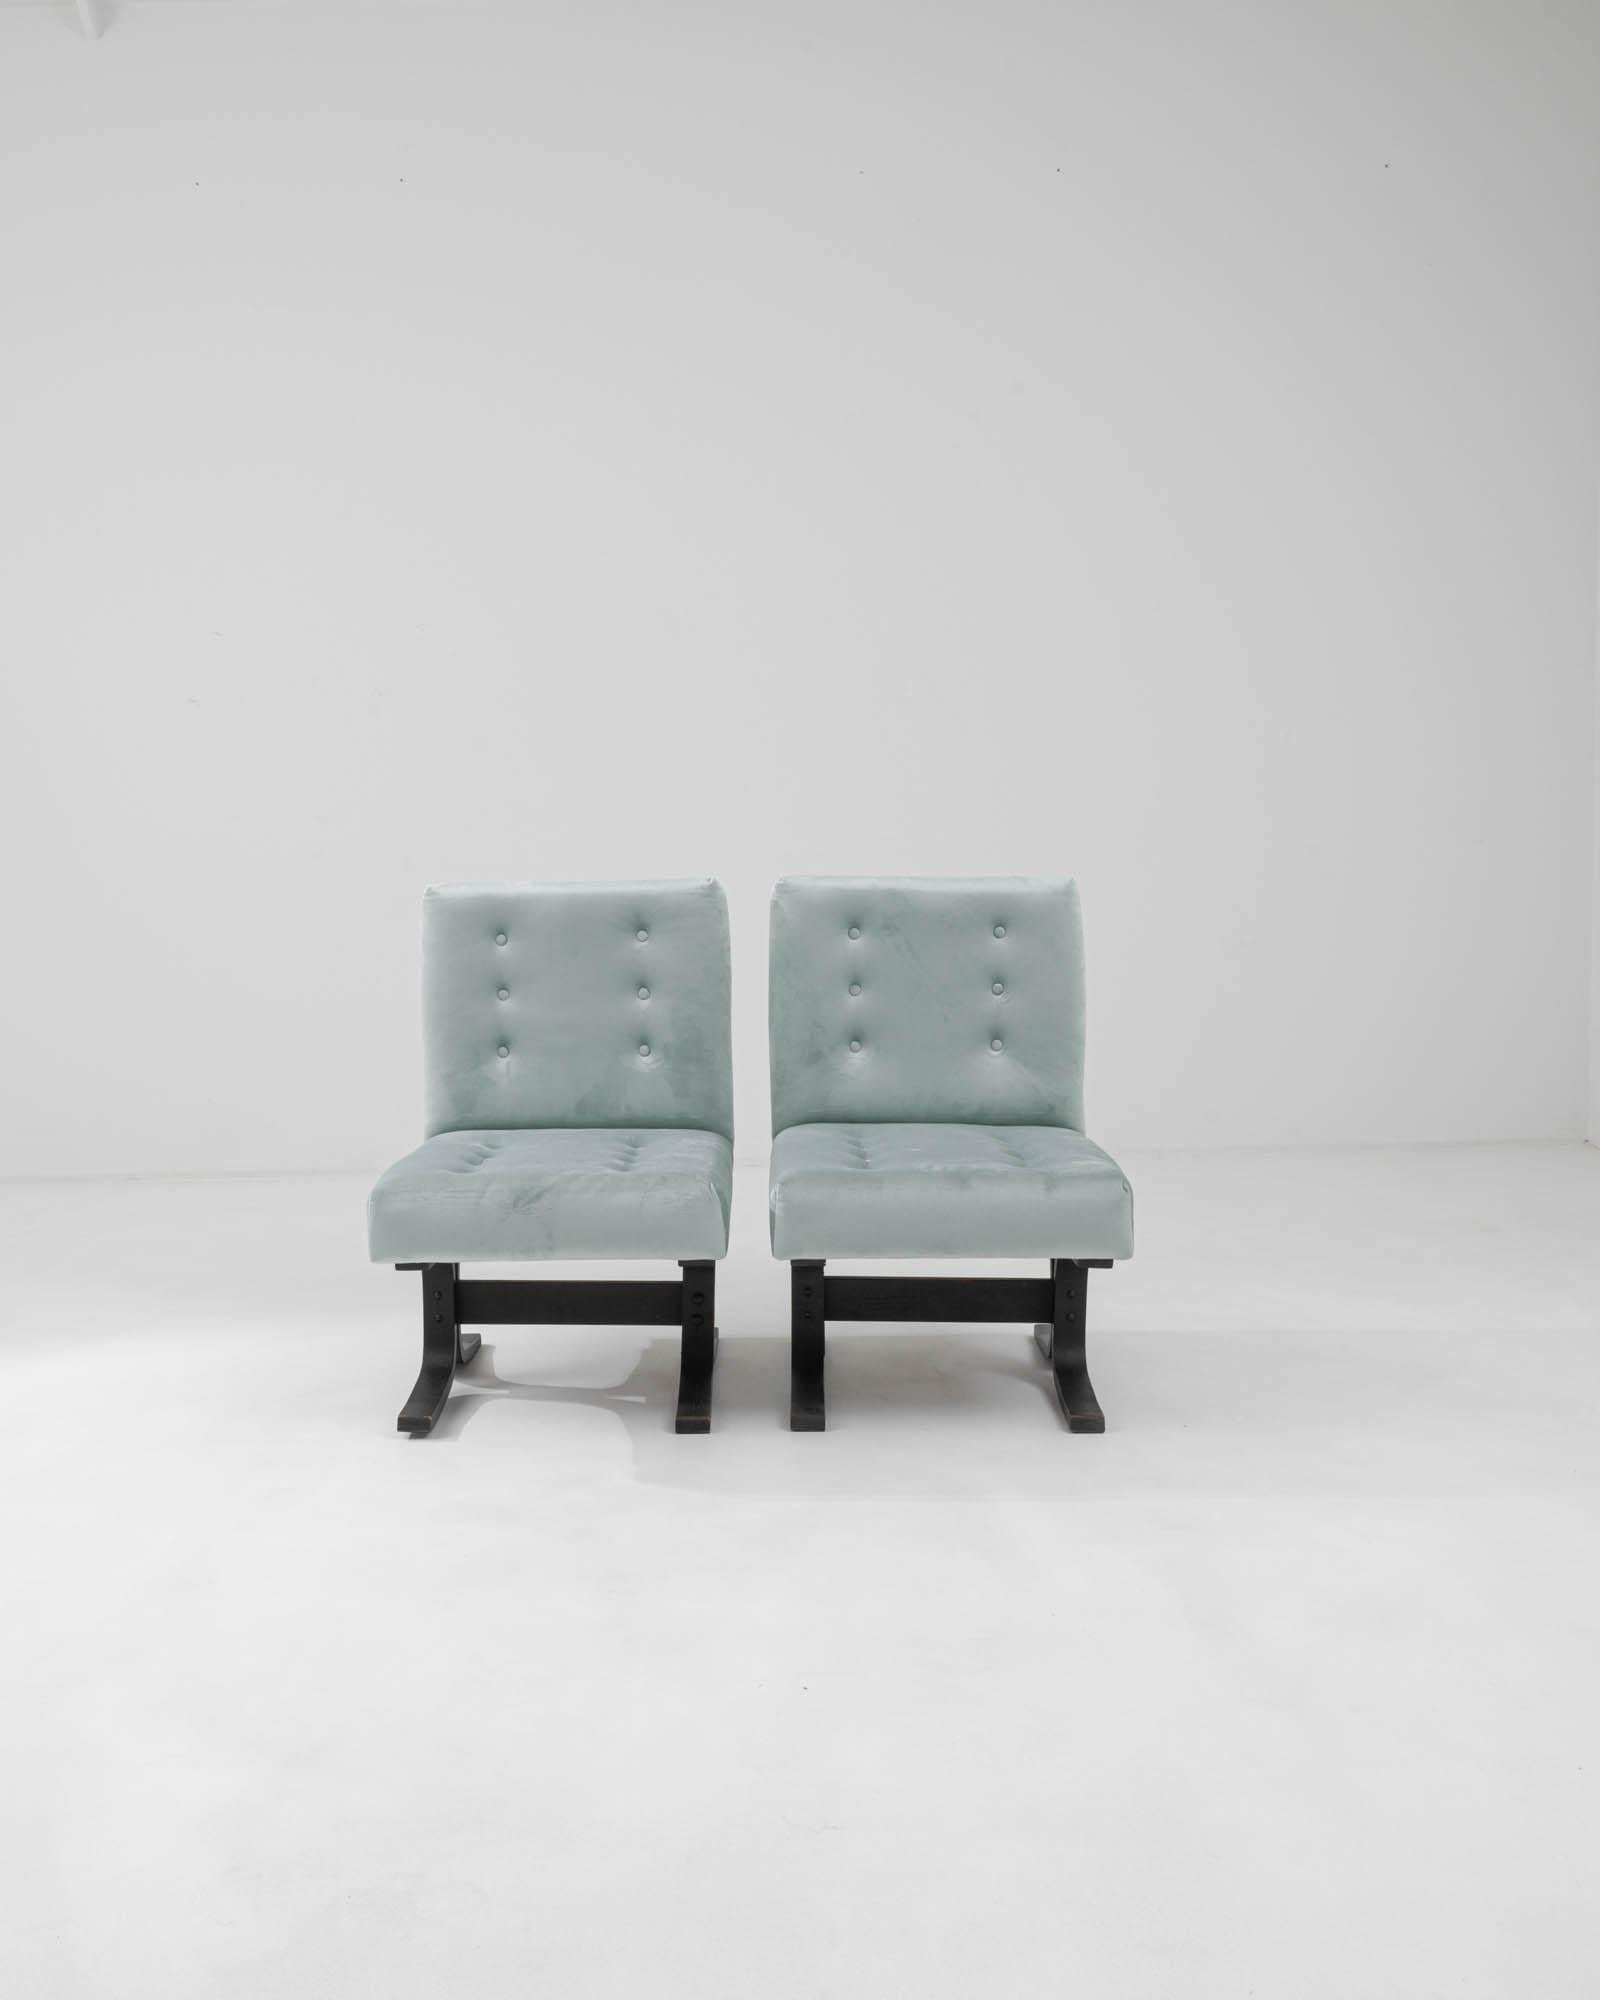 Cet ensemble antique comprend deux chaises tchèques rembourrées des années 1960 de Ludvik Volak, qui incarnent le design moderne du milieu du siècle. La douce teinte bleu ciel du revêtement dégage une élégance intemporelle. Fabriqués avec précision,